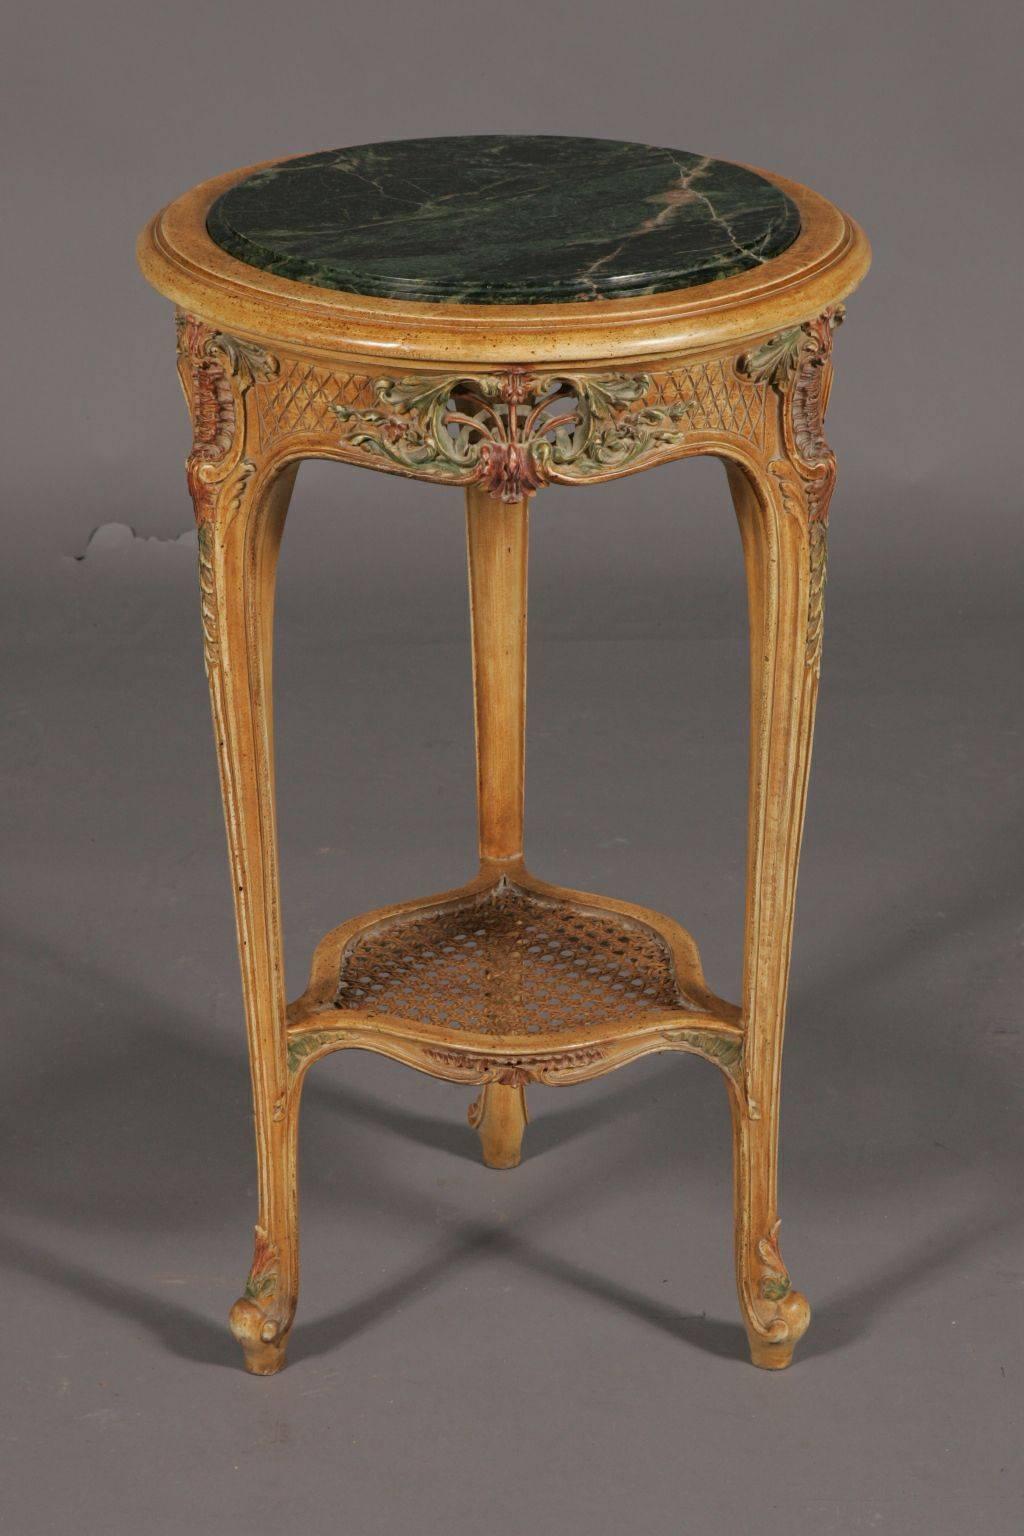 Excellente table d'appoint française de style Louis XV.
Bois de hêtre massif de grande valeur, sculpté dans les moindres détails. Incrustations colorées et dorées.

(G-Sam-25).